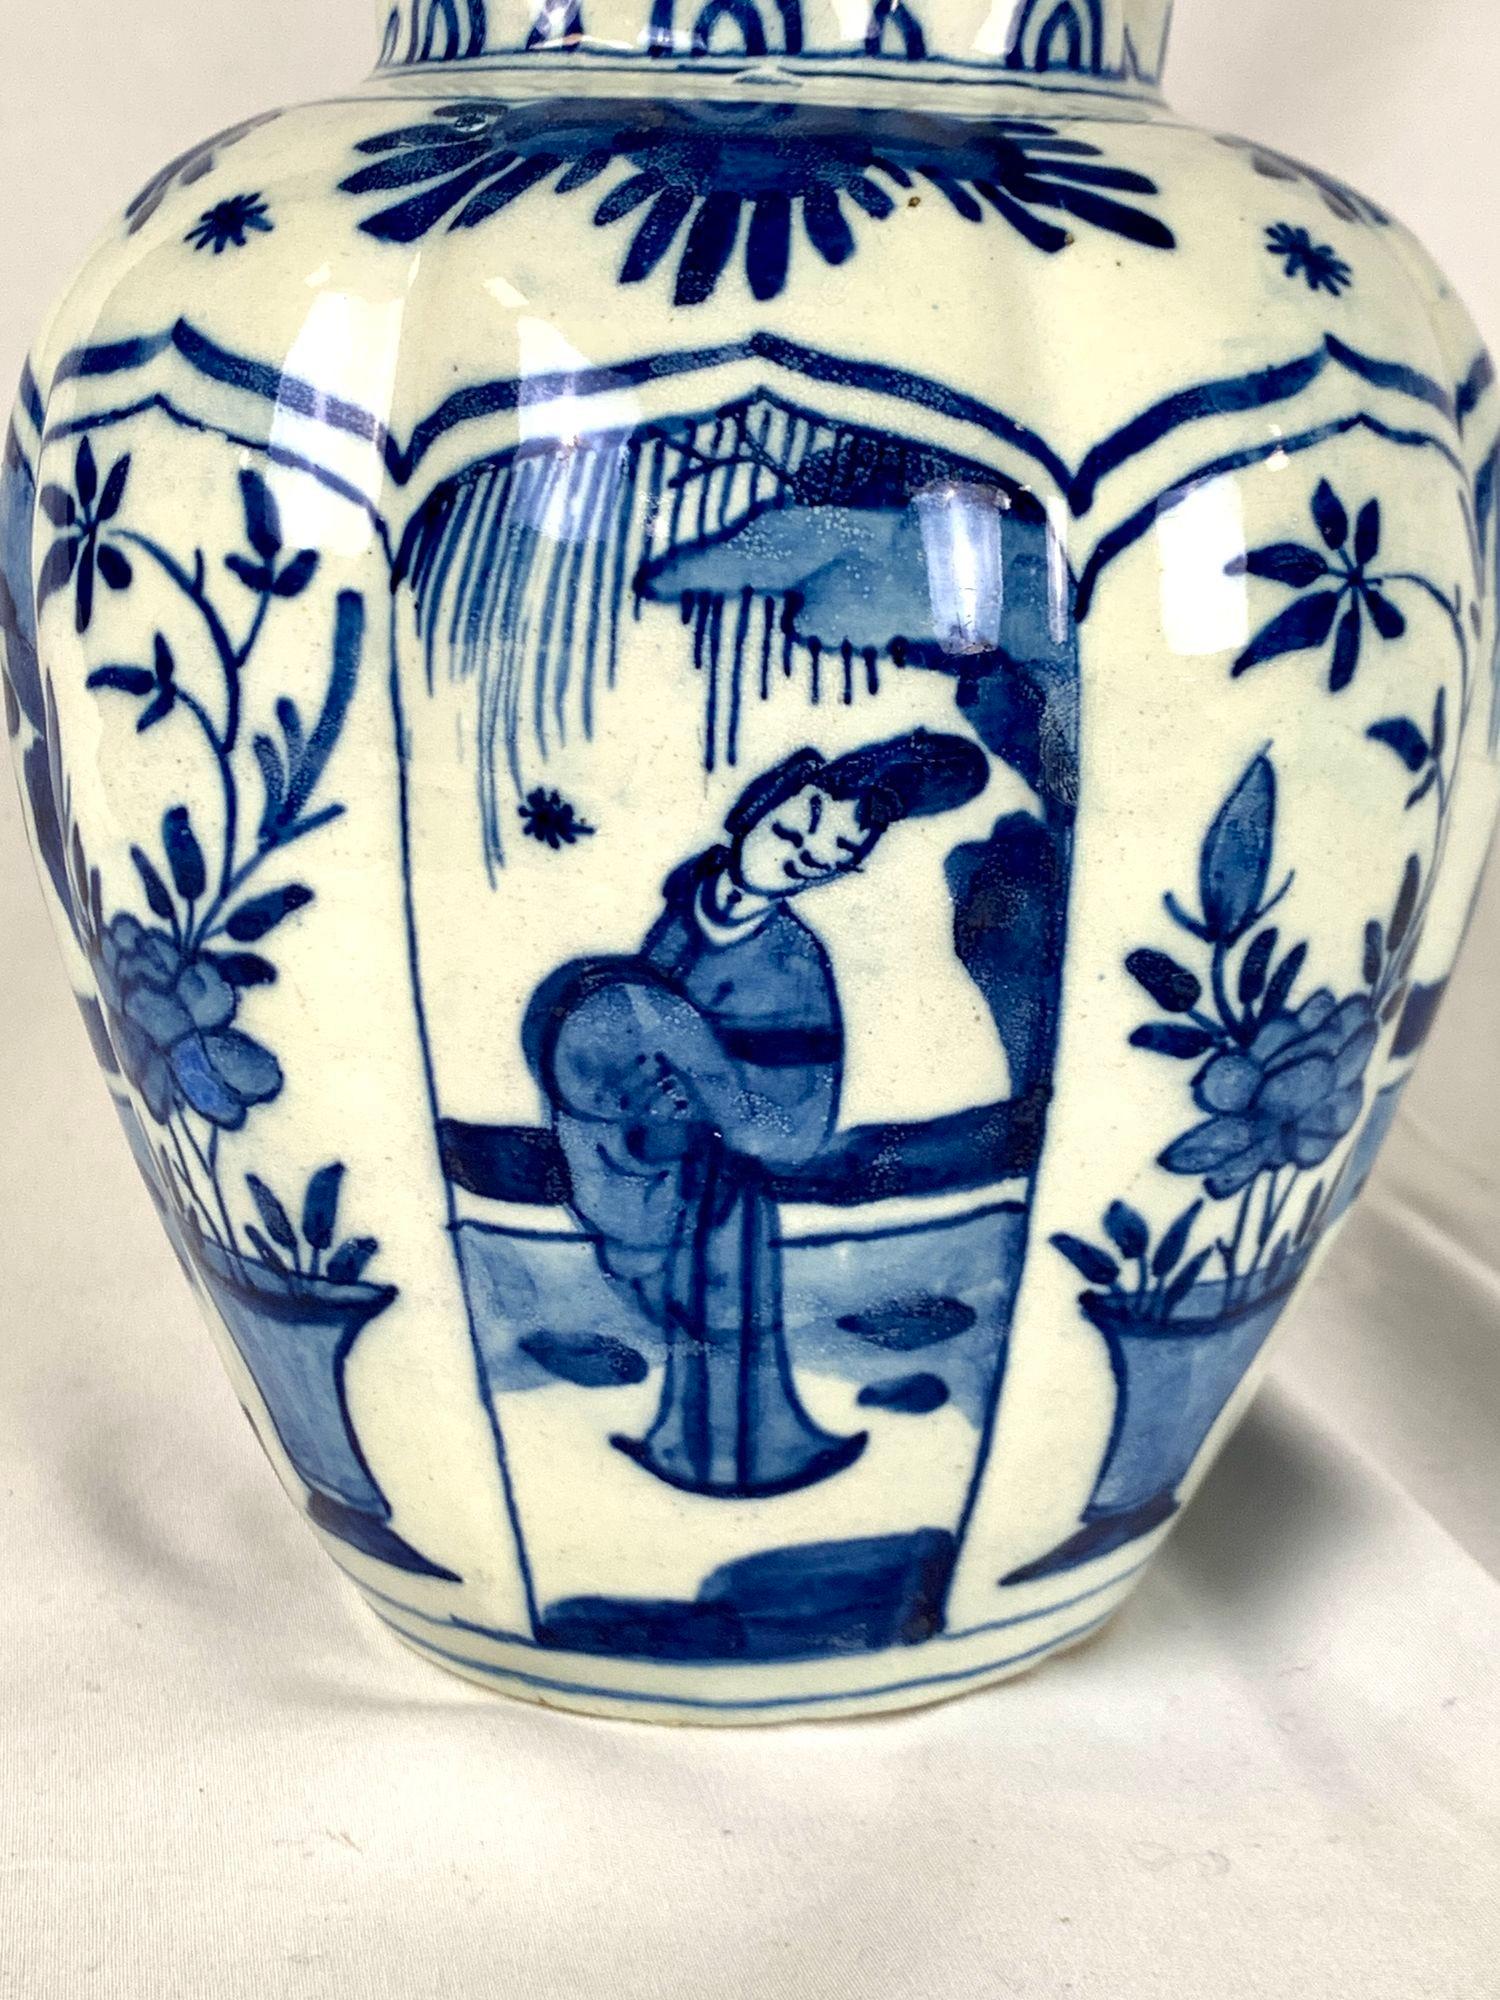 Dieser schöne Krug wurde um 1800 in den Niederlanden handbemalt.
Es ist mit einem blau-weißen Chinoiserie-Muster verziert, das abwechselnd spitzbogige Felder mit orientalischen Figuren und Vasen mit Pfingstrosen zeigt.
Die achteckige Form des